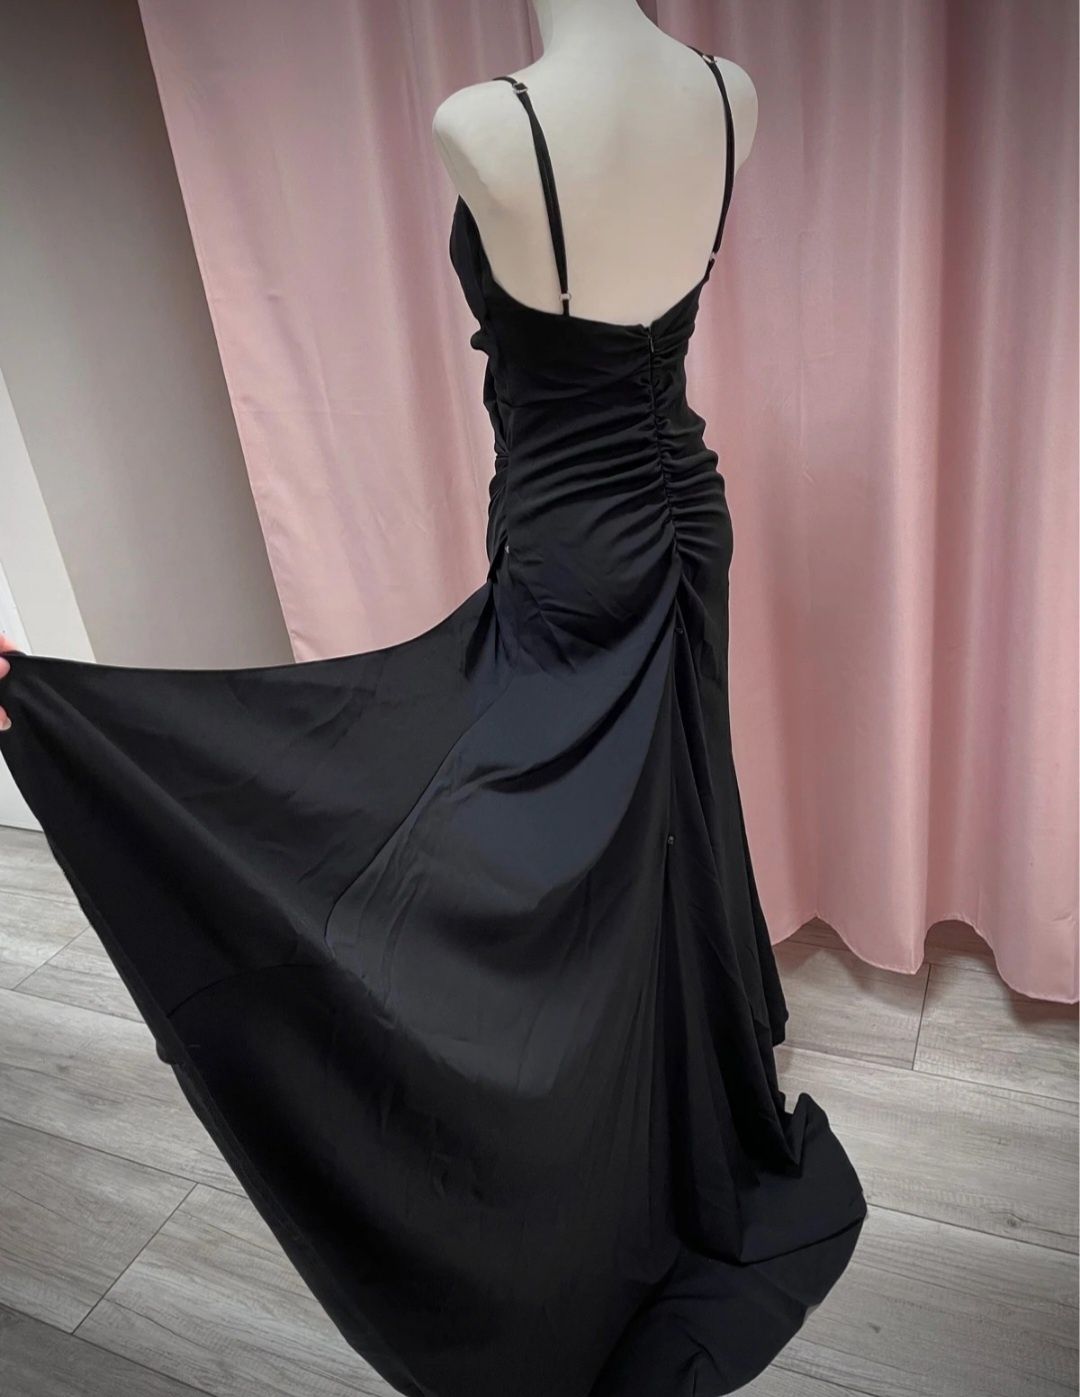 Lou czarna sukienka maxi, która pięknie modeluje sylwetkę syrenka